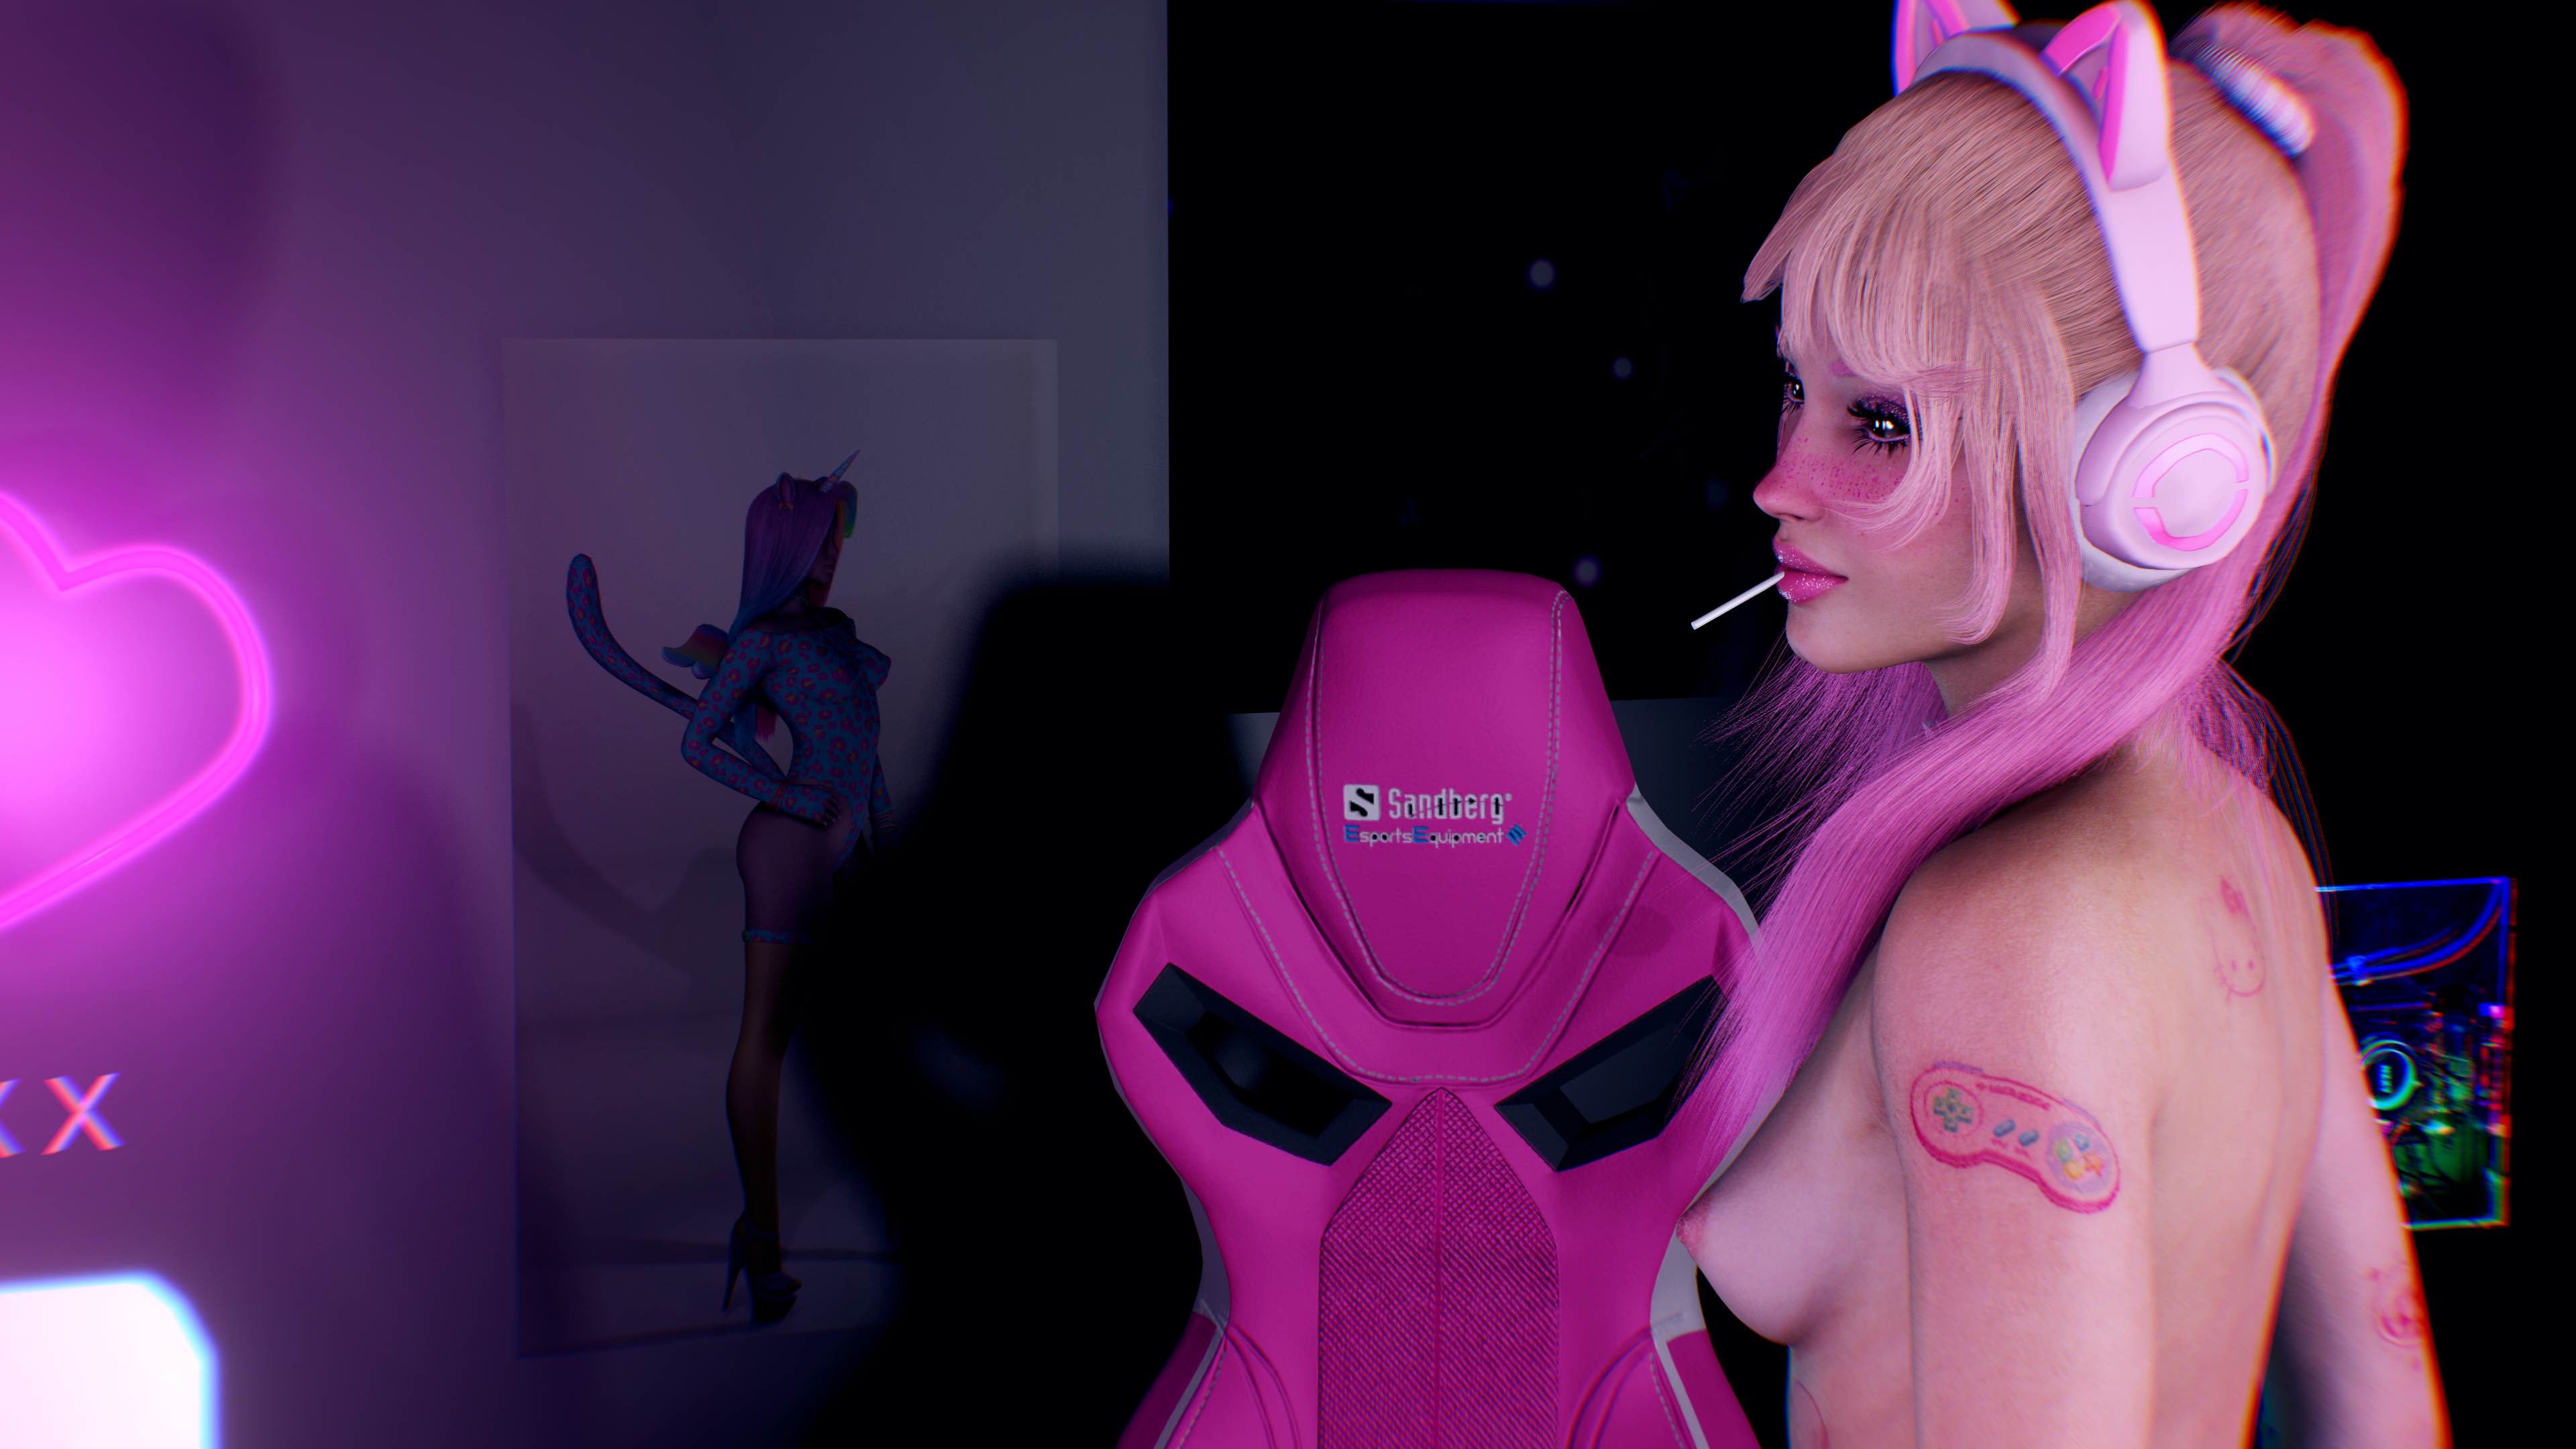 EGirl Bedroom Dance Scene - Starring Poppy Doll  #egirl #pink #bimbo